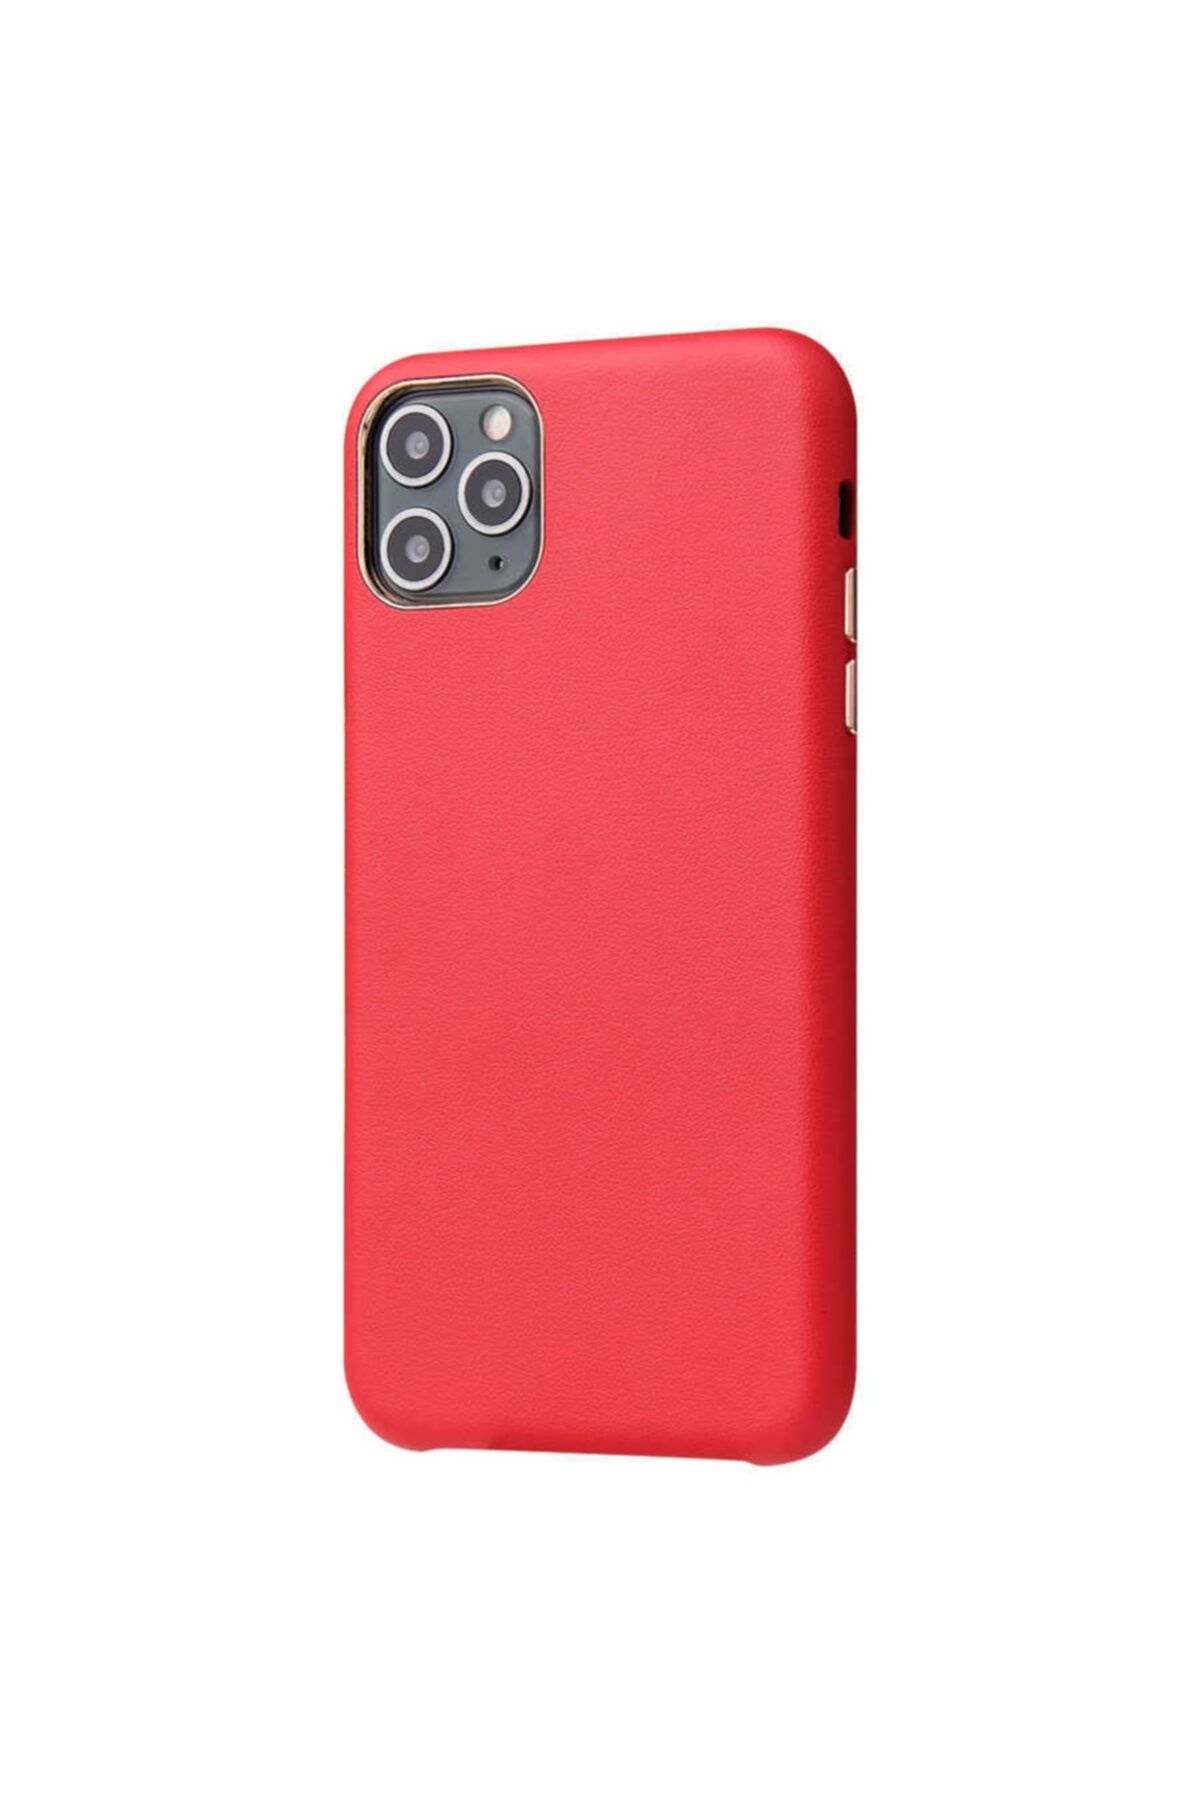 UnDePlus Apple Iphone 11 Pro Kılıf Orjinal Deri Lansman Kapak Kırmızı